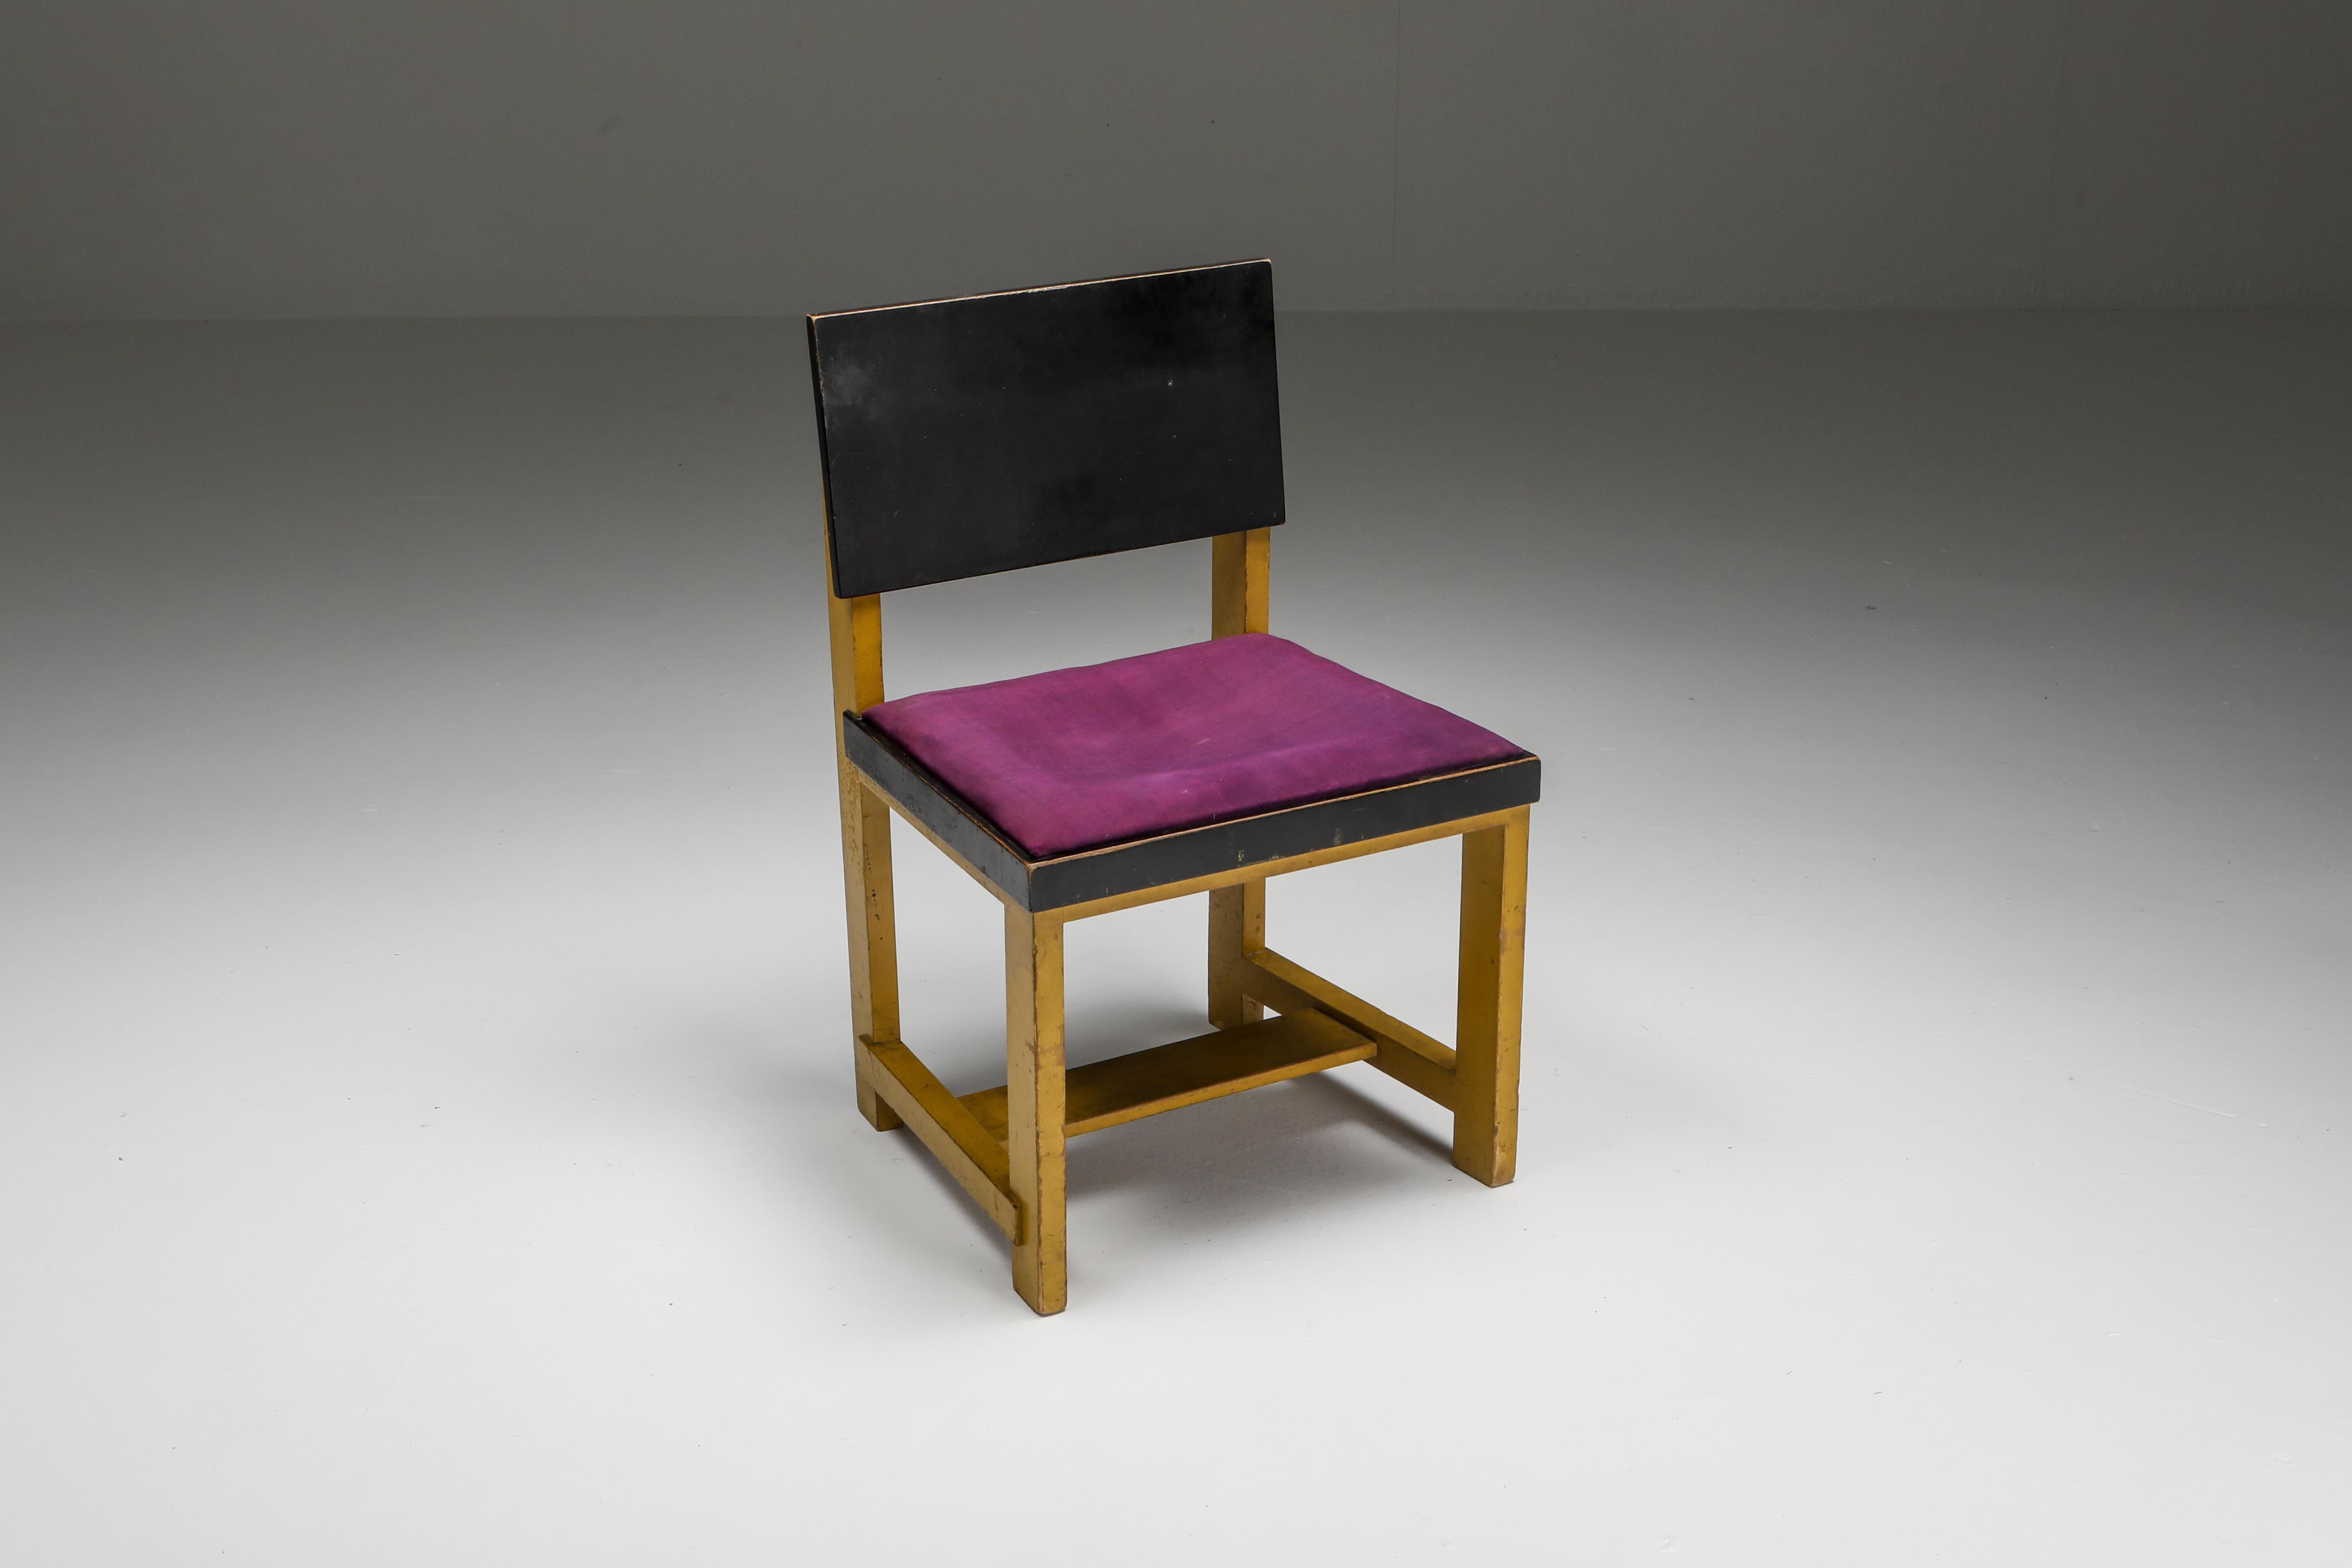 Gelber und schwarzer modernistischer Stuhl, von Hendrik Wouda, H. Pander & Zonen, Niederlande, 1924.

Bemalte Kiefer

Teil der Ausstellung 